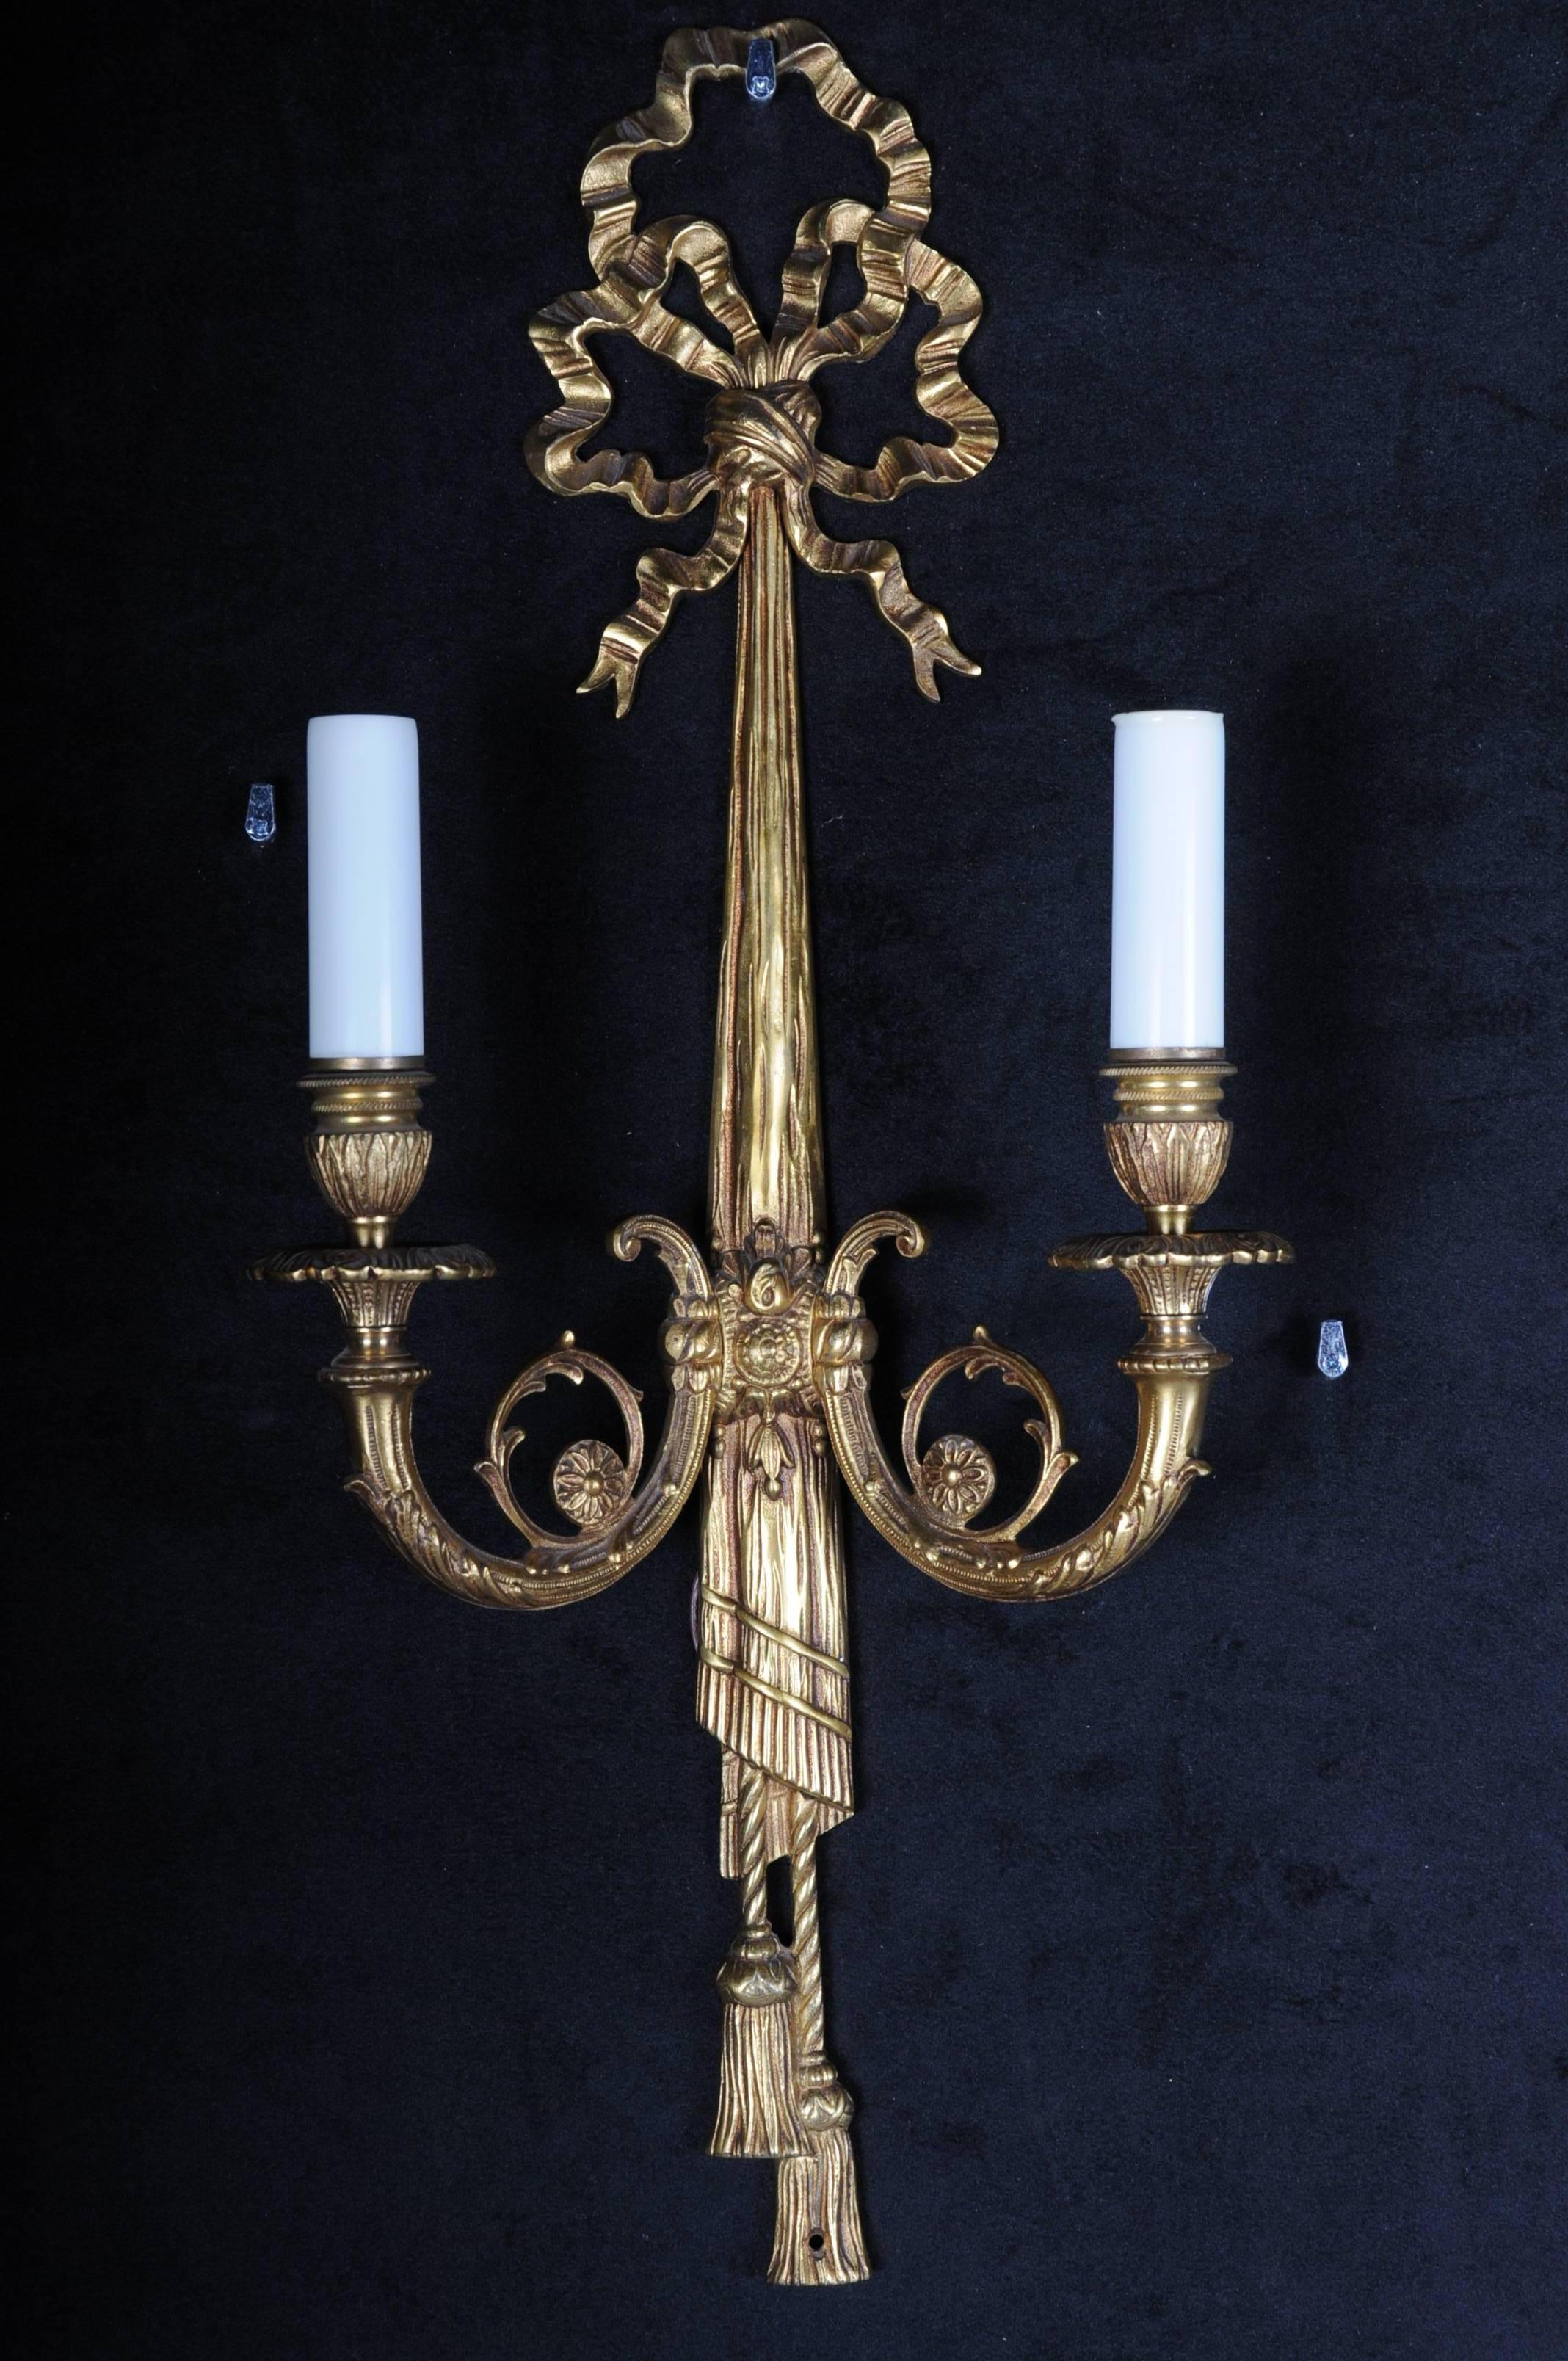 Belle applique en bronze de style Louis XVI

Deux flammes. Bronze massif. Lampe couronnée d'un nœud en plastique. Electrifié.

(F-82).